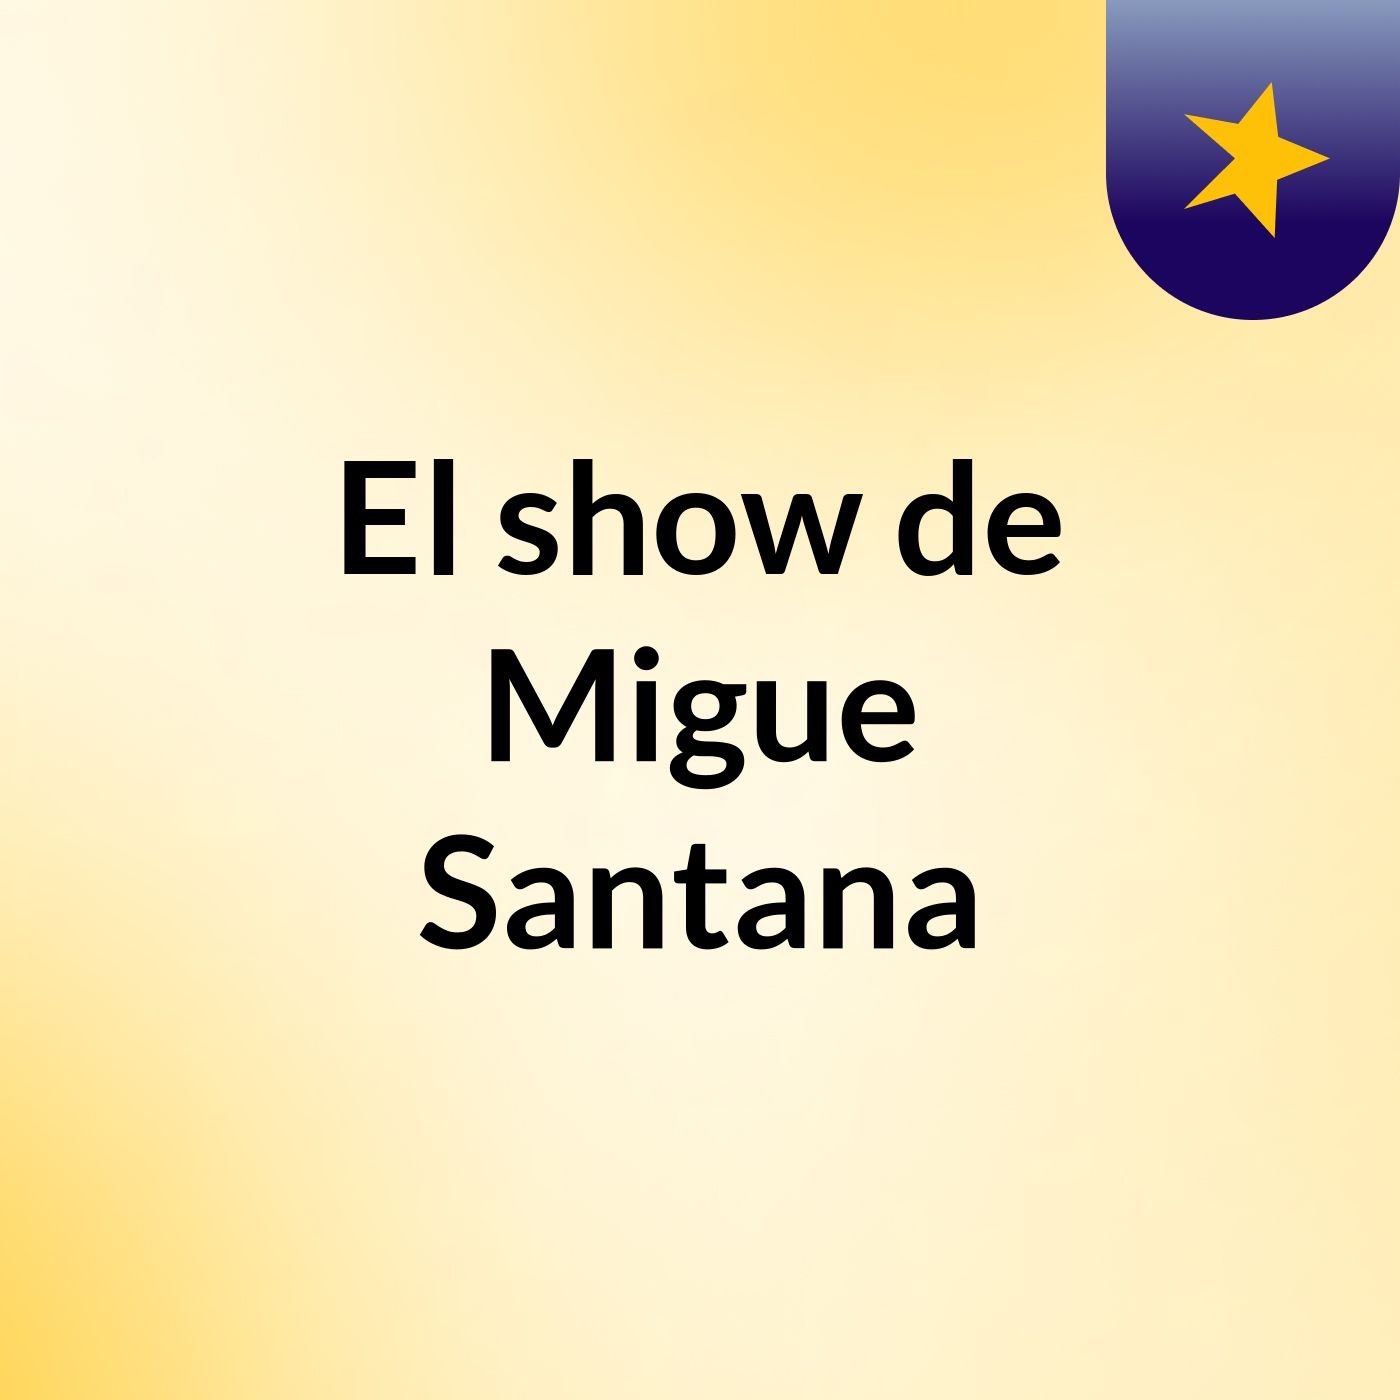 El show de Migue Santana